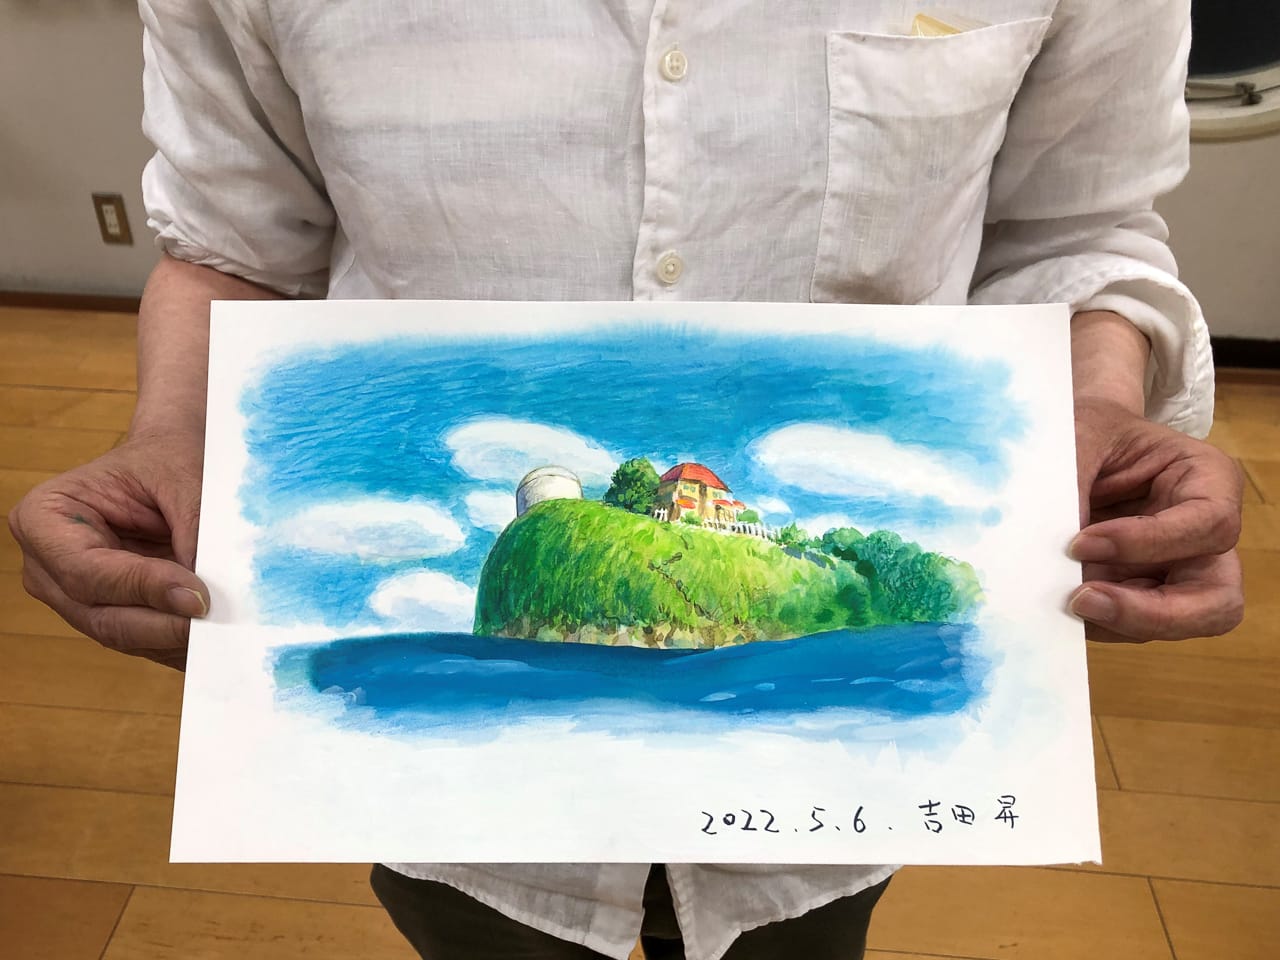 崖の上のポニョ 美術監督・吉田昇さんの描き下ろしイラスト公開!